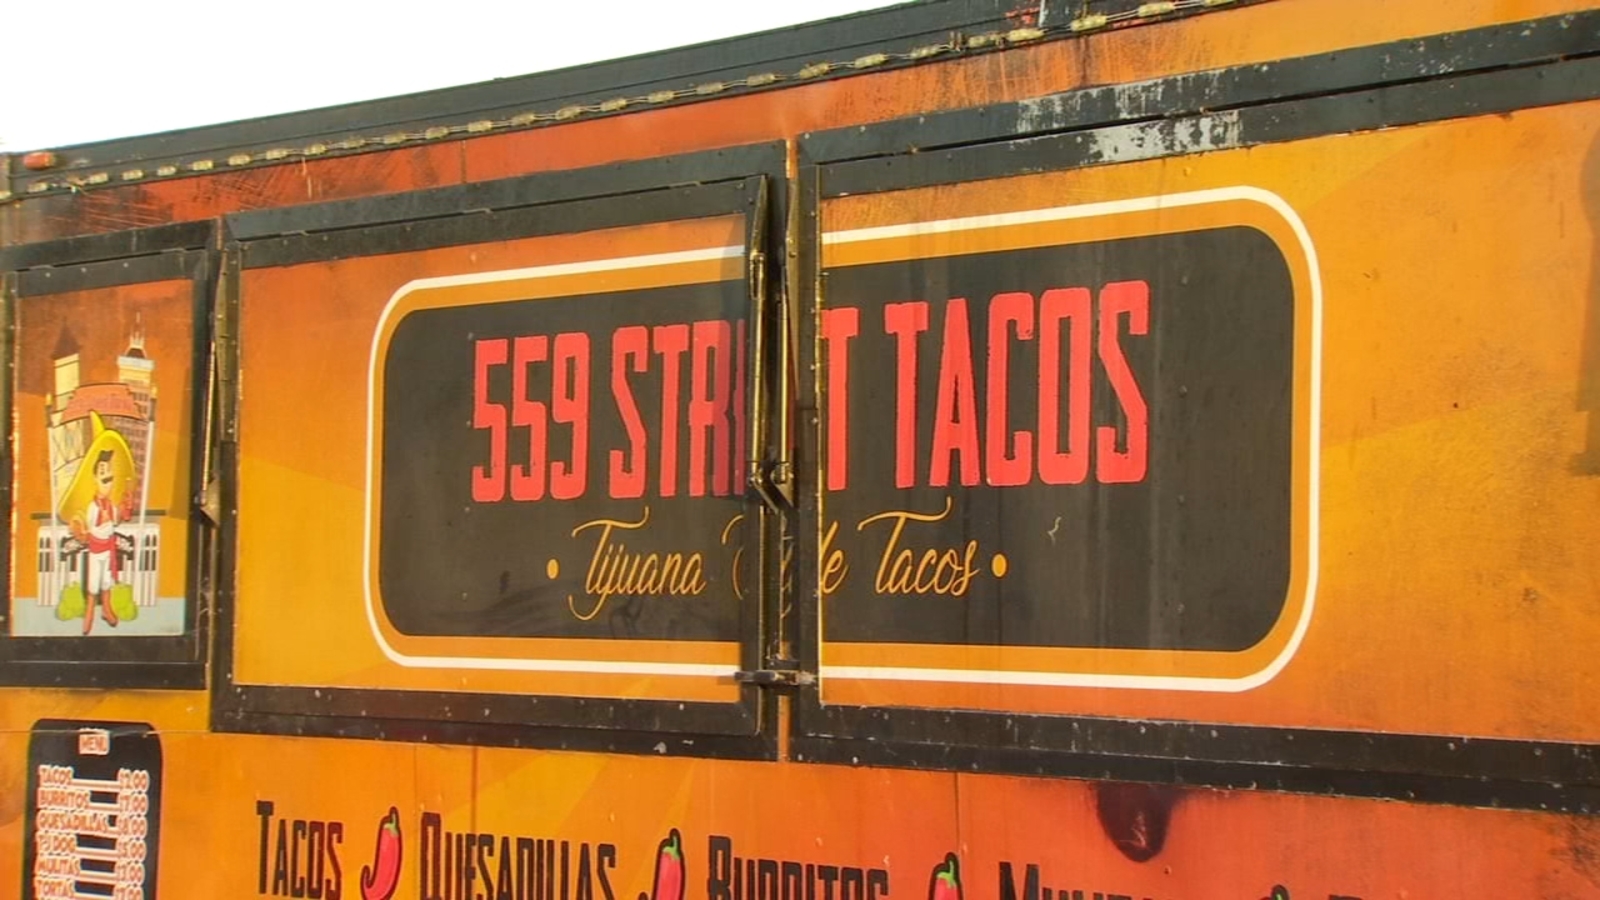 559 Tacos.jpg